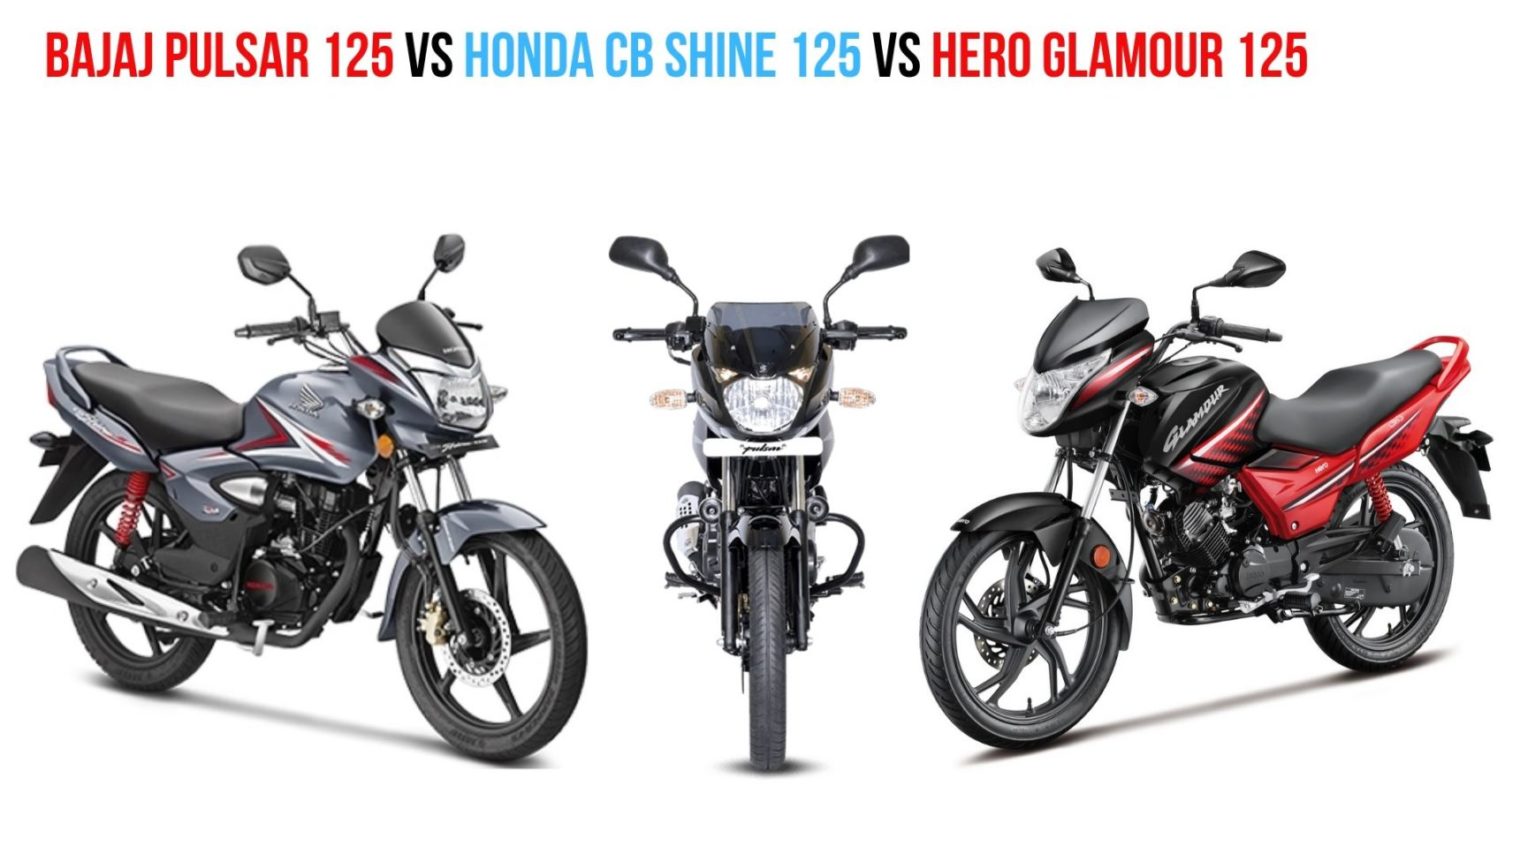 Bajaj Pulsar 125 Vs Honda Cb Shine 125 Vs Hero Glamour 125 Specs